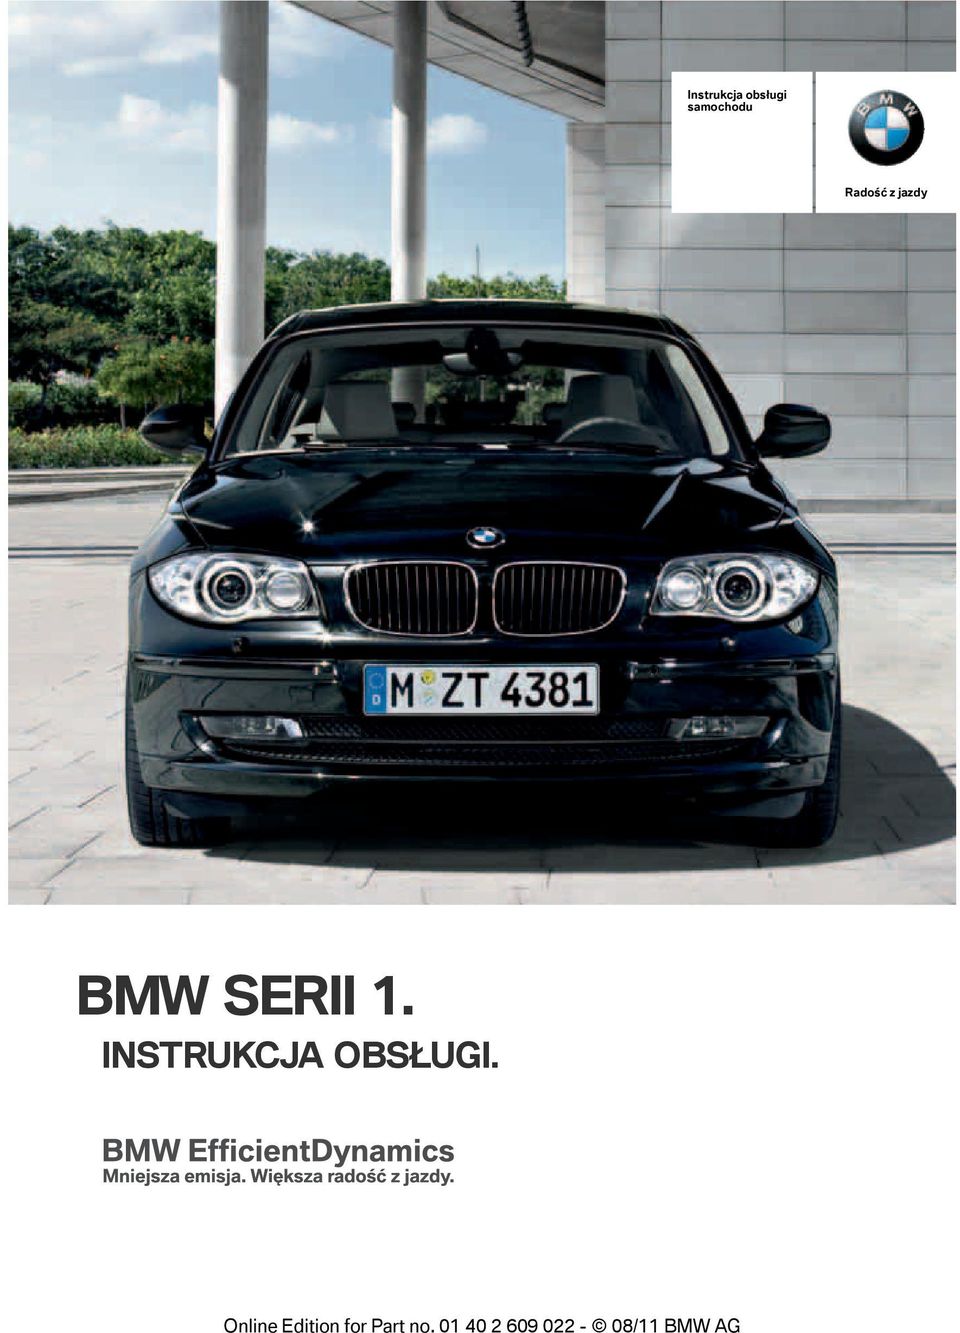 jazdy BMW SERII 1.